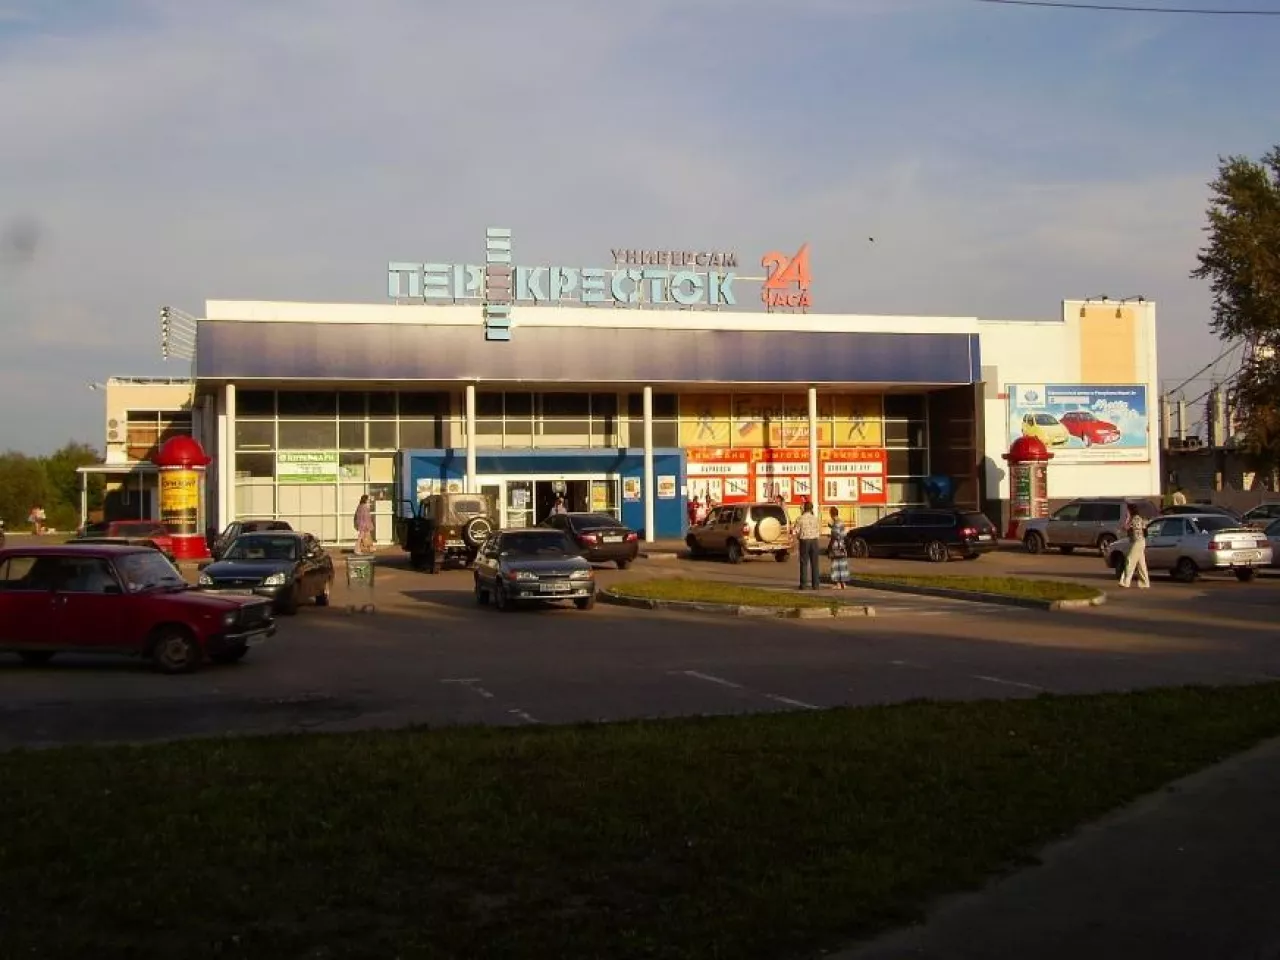 Na zdj. supermarket Pieriekriostok (fot. Wikimedia Commons/Alkort, na lic. CC BY 3.0)